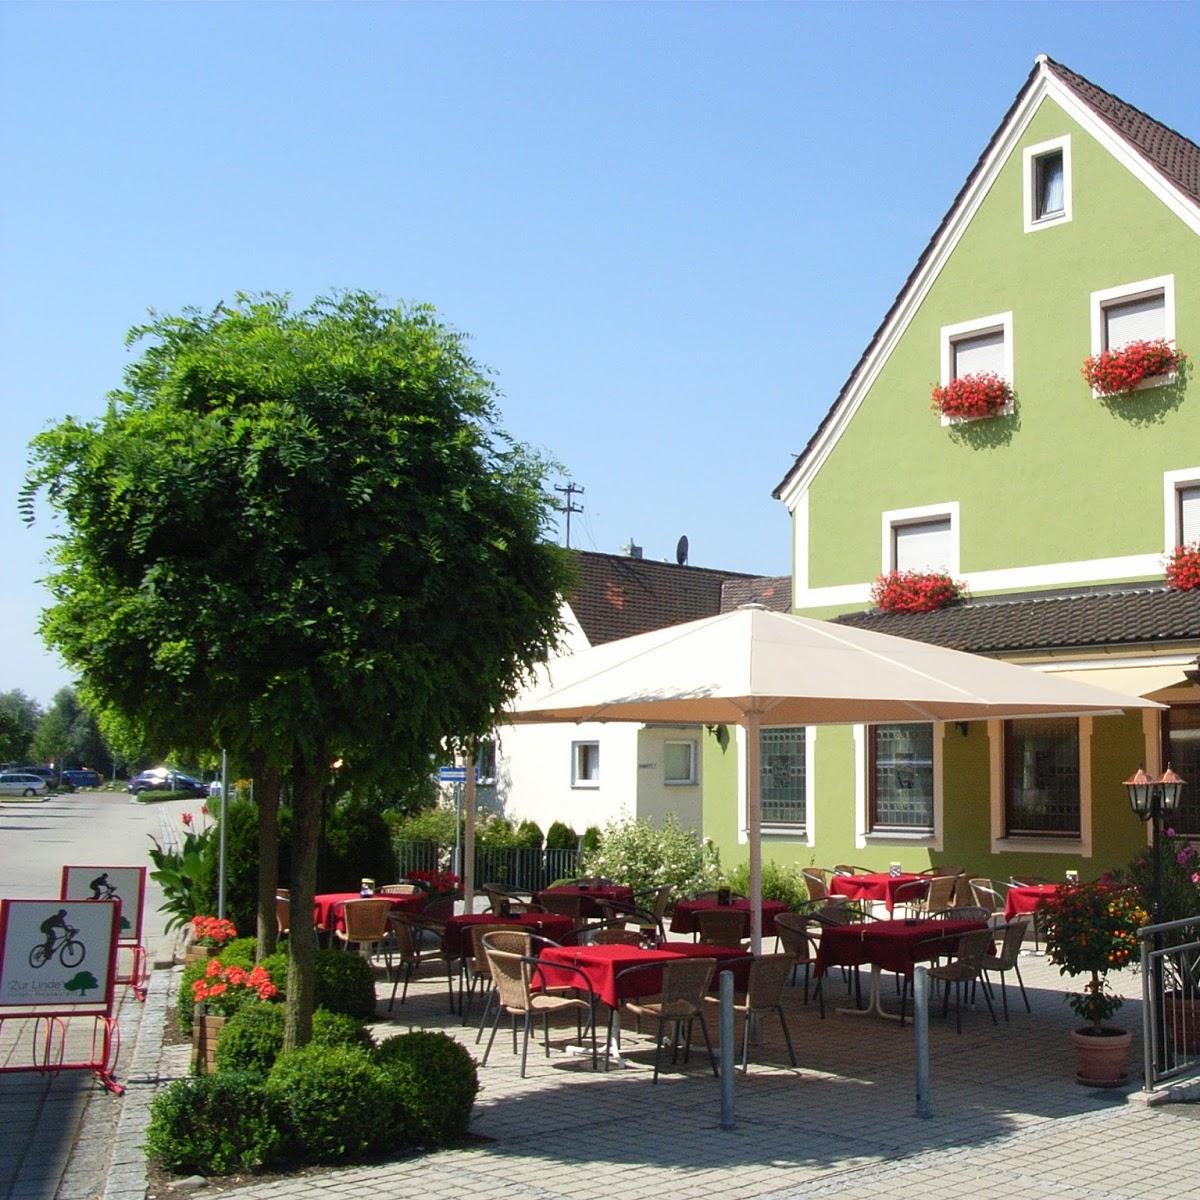 Restaurant "Hotel-Restaurant Zur Linde" in  Erbach